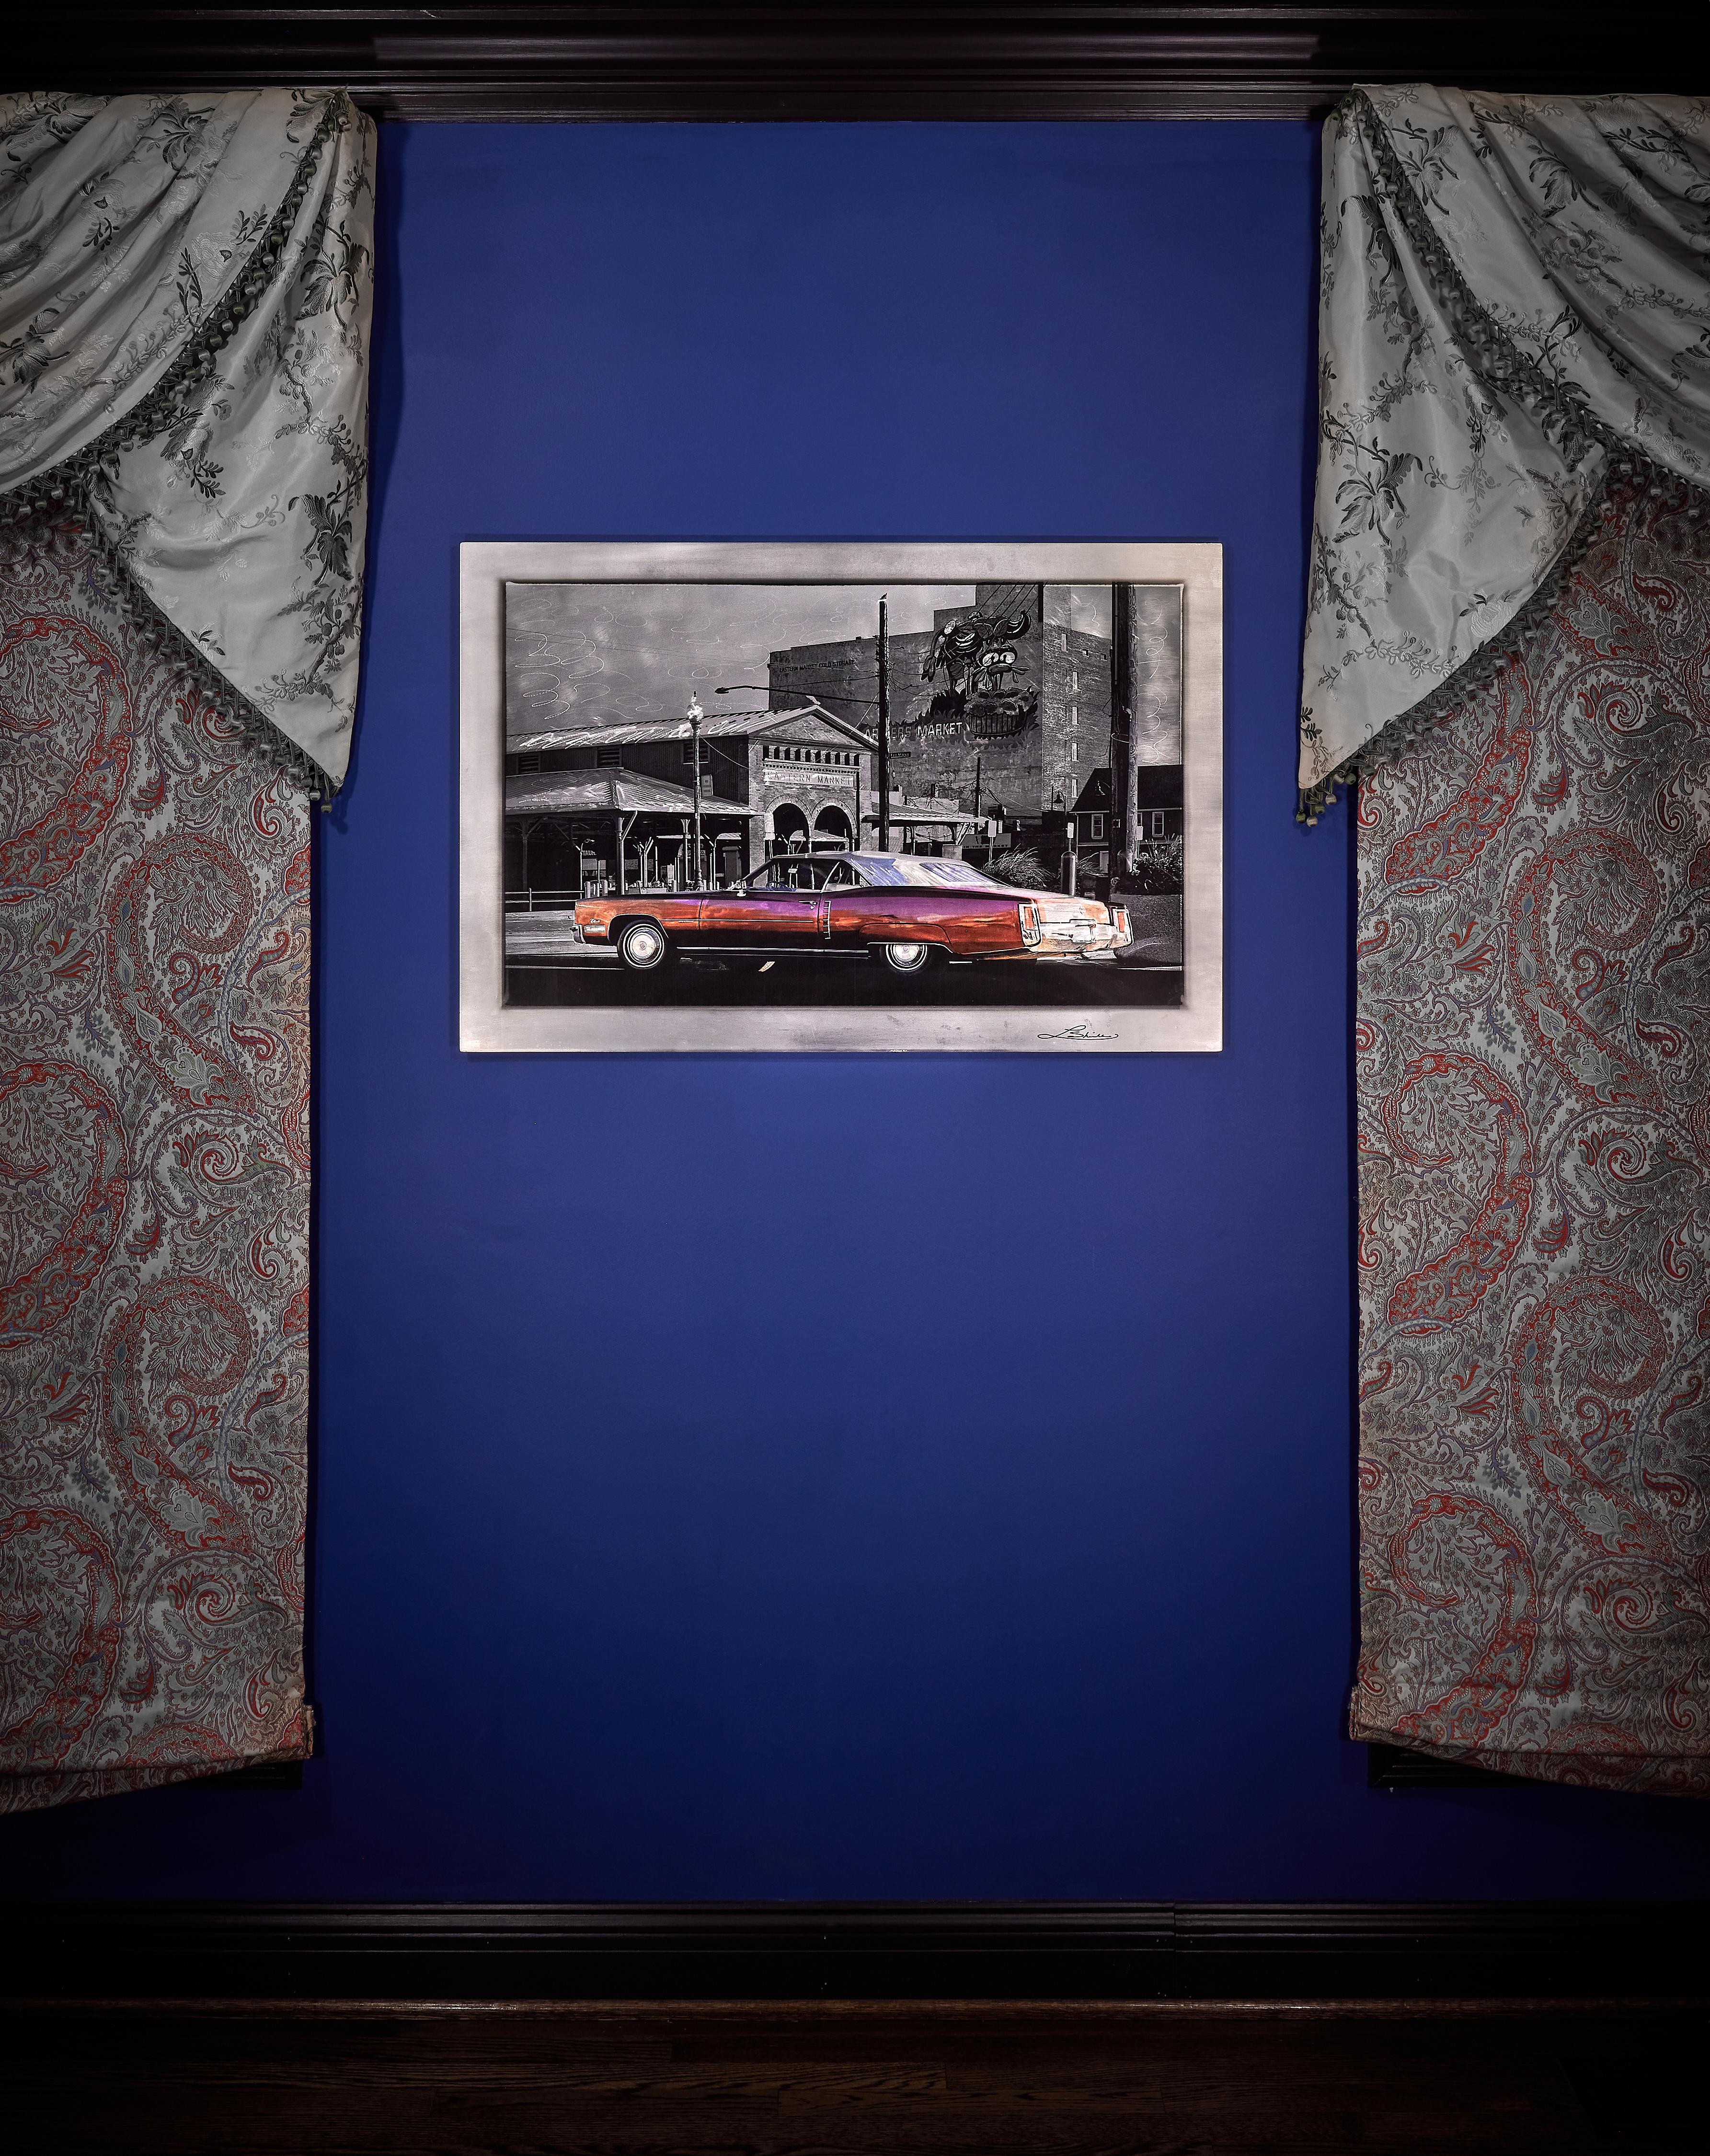 Une Cadillac Eldorado classique est apparue comme par magie lors d'une excursion photographique matinale à l'Eastern Market de Détroit. Situé au cœur de la ville, le Marché fournit des victuailles depuis 1891. En cette fraîche journée d'automne, le